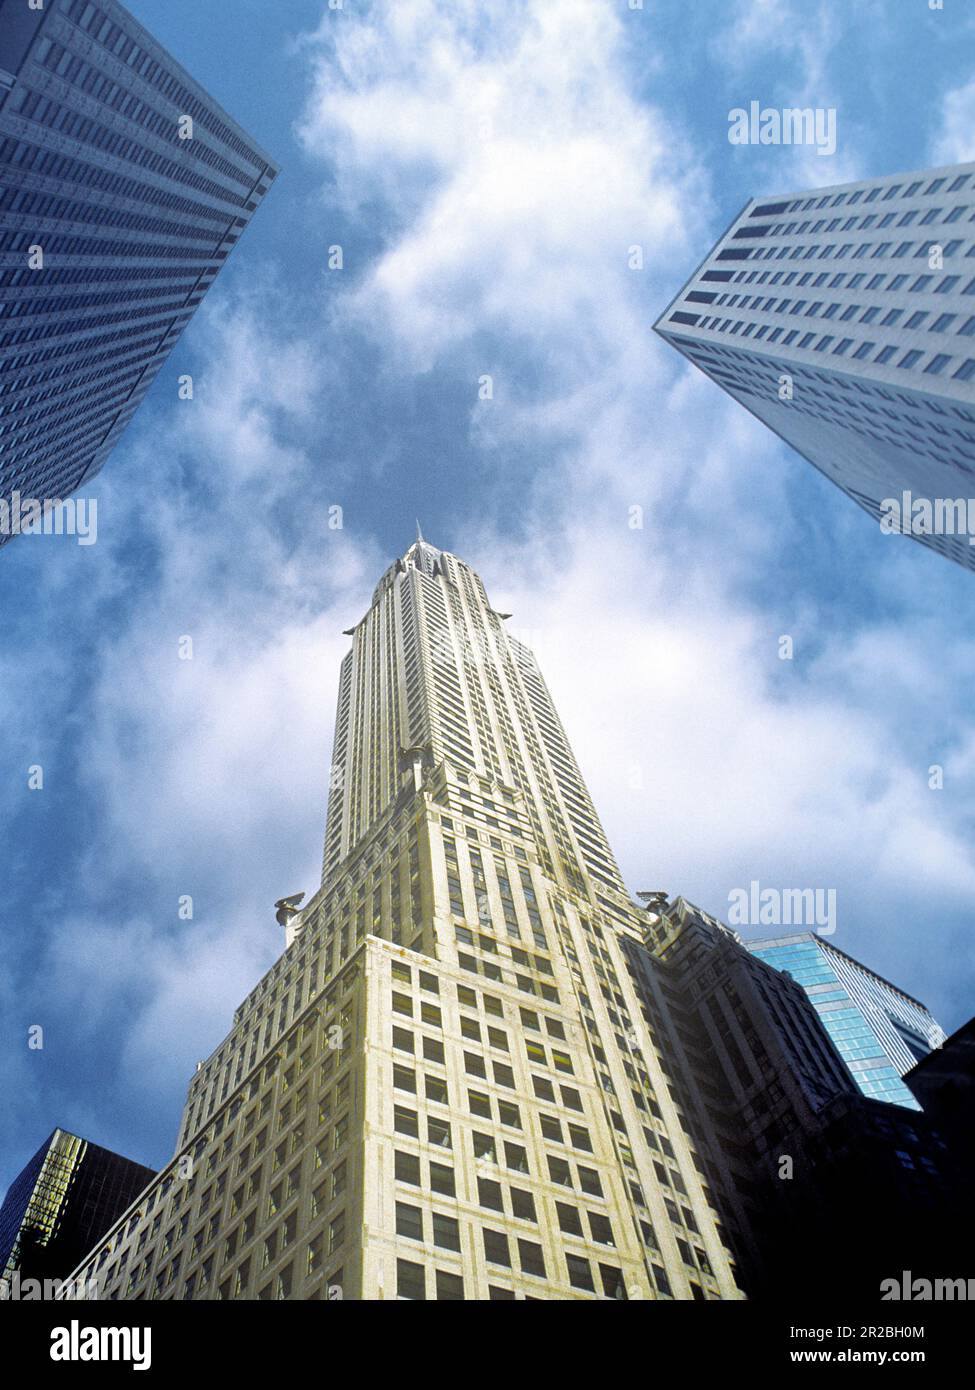 Gratte-ciel du Chrysler Building à New York. Vue sur les bâtiments depuis la rue. Immobilier commercial à Midtown Manhattan USA Banque D'Images